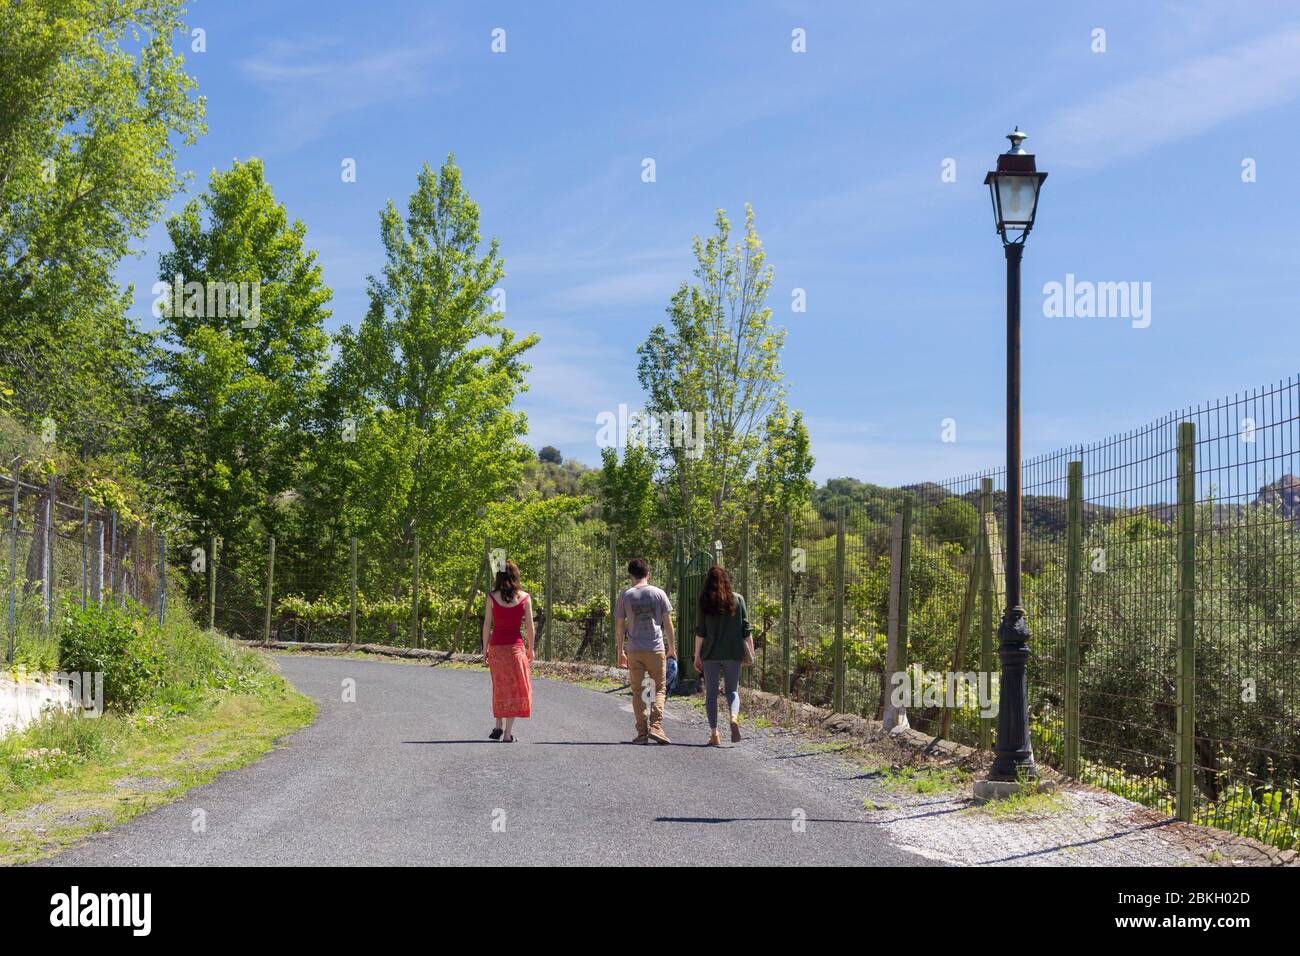 GRANADA, SPANIEN - 4. MAI 2020: Freunde, die an der Straße entlang gehen, respektieren die Distanz, die sie zurücklegen müssen, während Spanien reibungslos öffnet Stockfoto